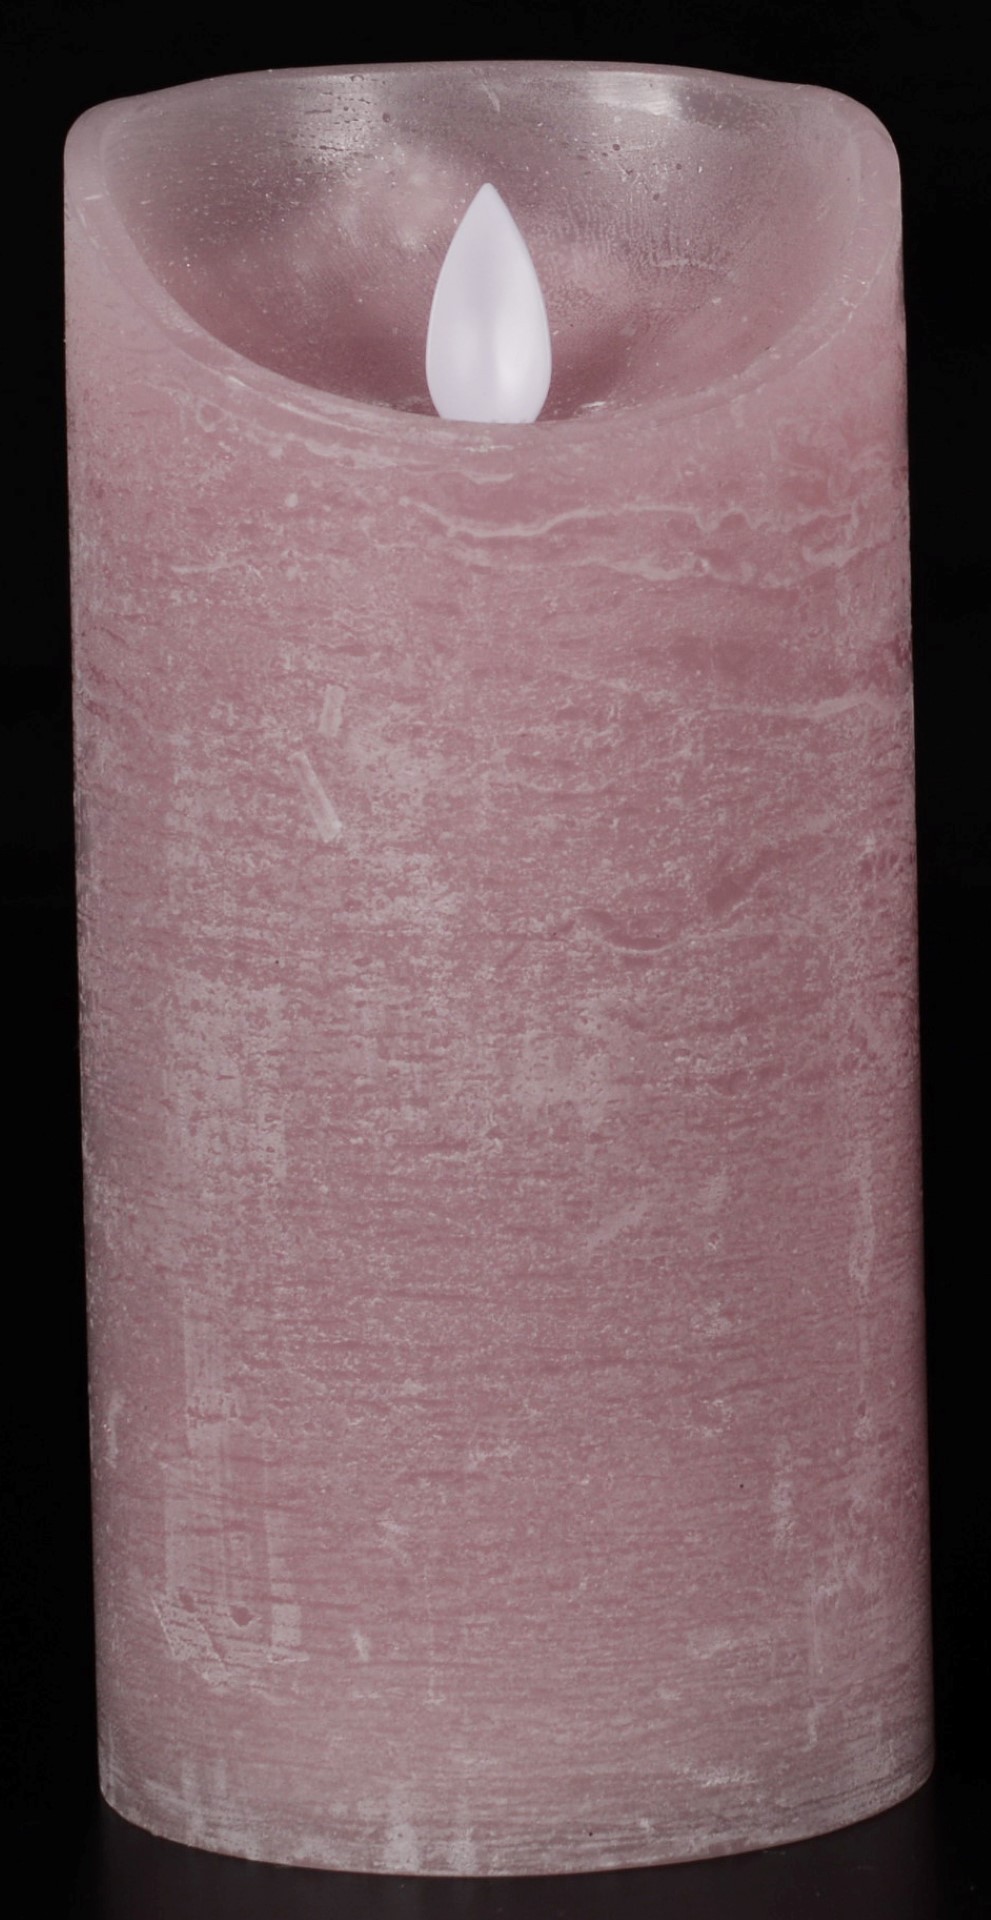 1x Roze LED kaars / stompkaars 15 cm - Luxe kaarsen op batterijen met bewegende vlam